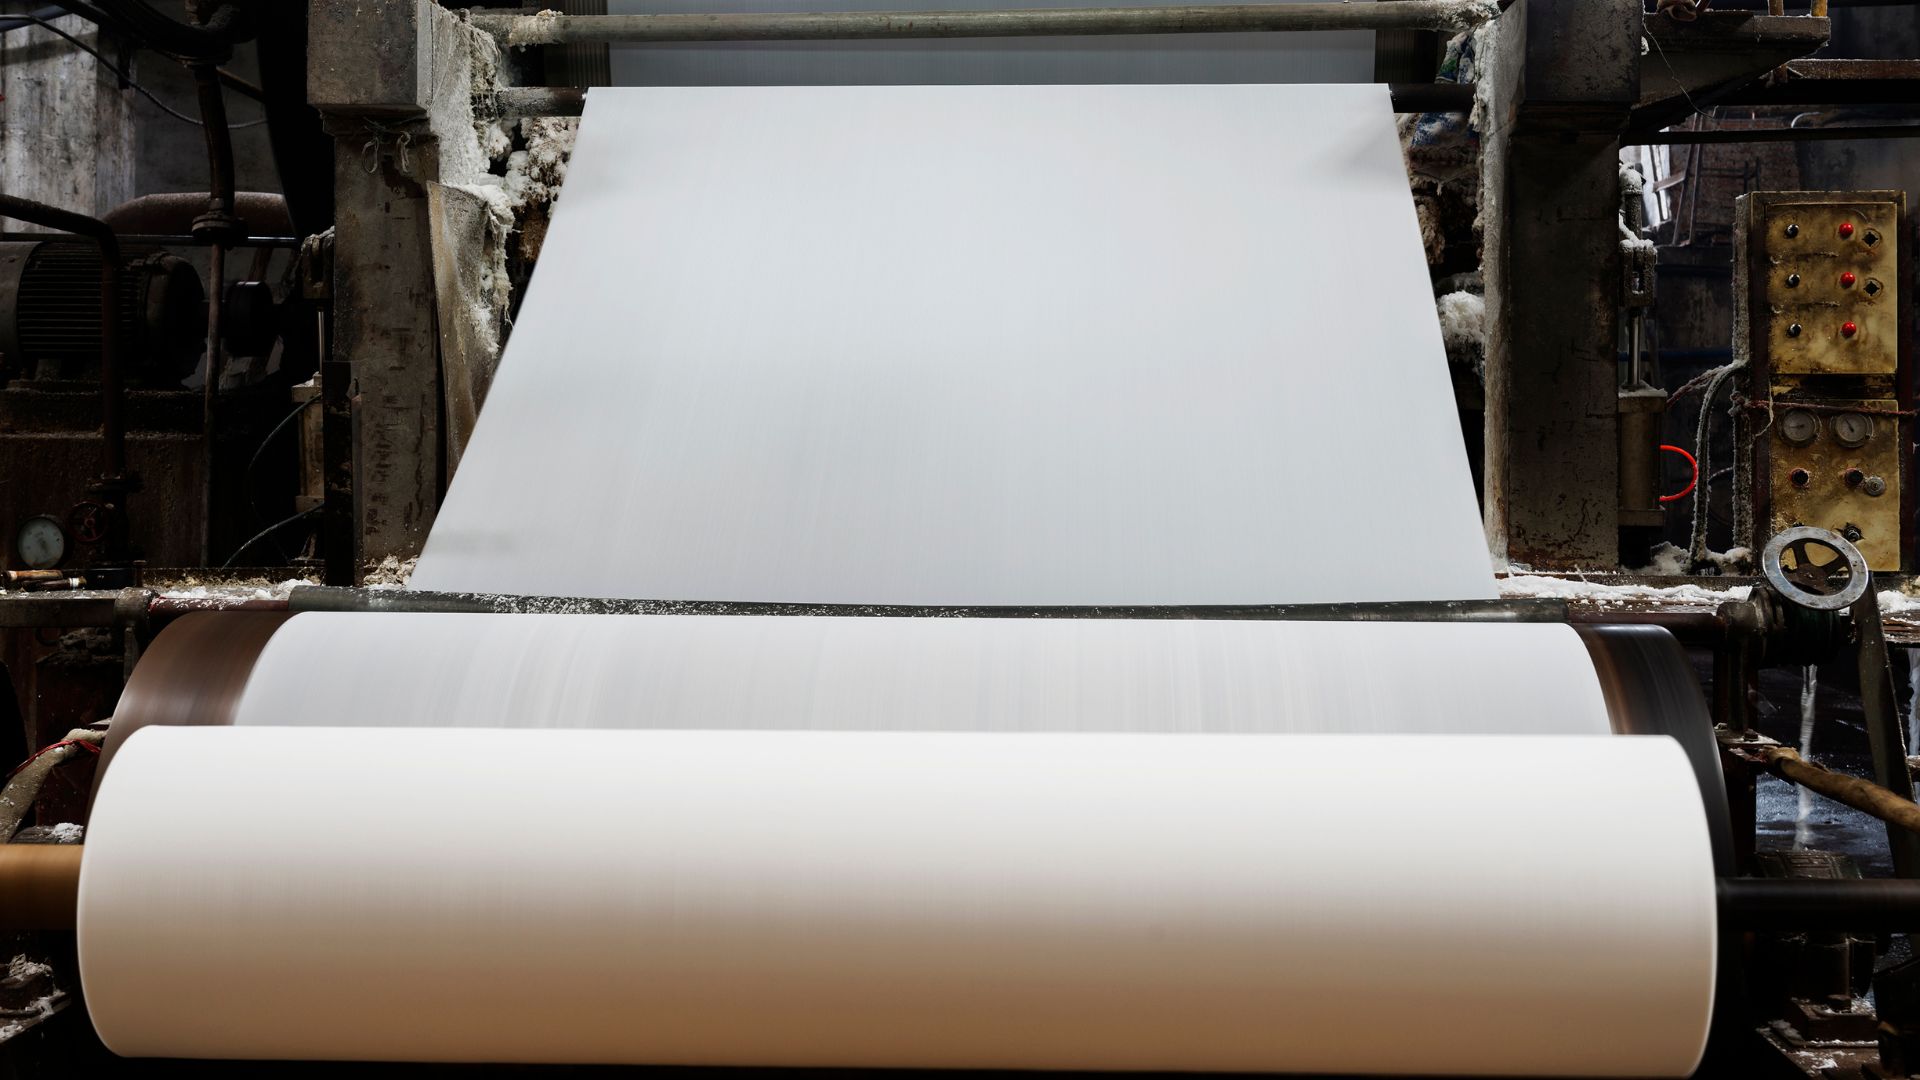 referências do artigo sobre impermeabilização na indústria de papel celulose